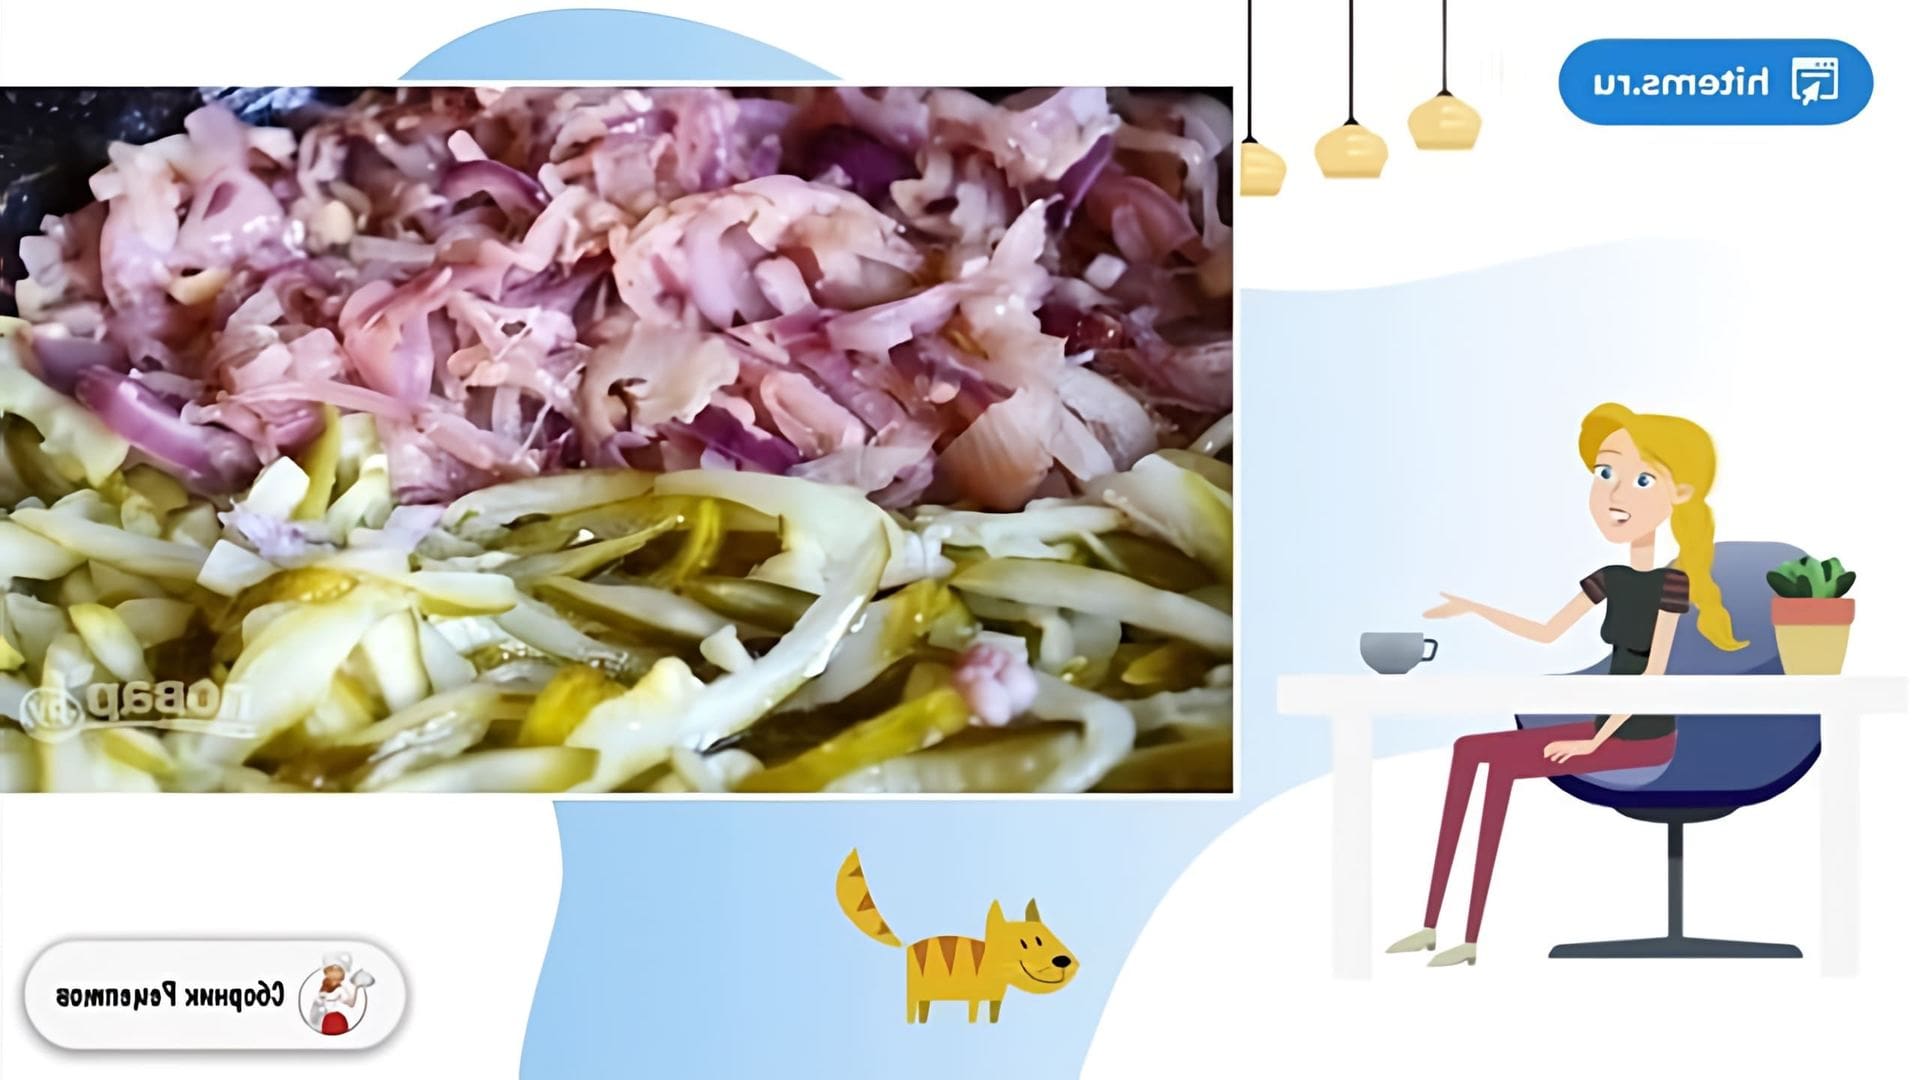 В этом видео рассказывается о приготовлении сборной рыбной солянки, которая является традиционным блюдом русской кухни